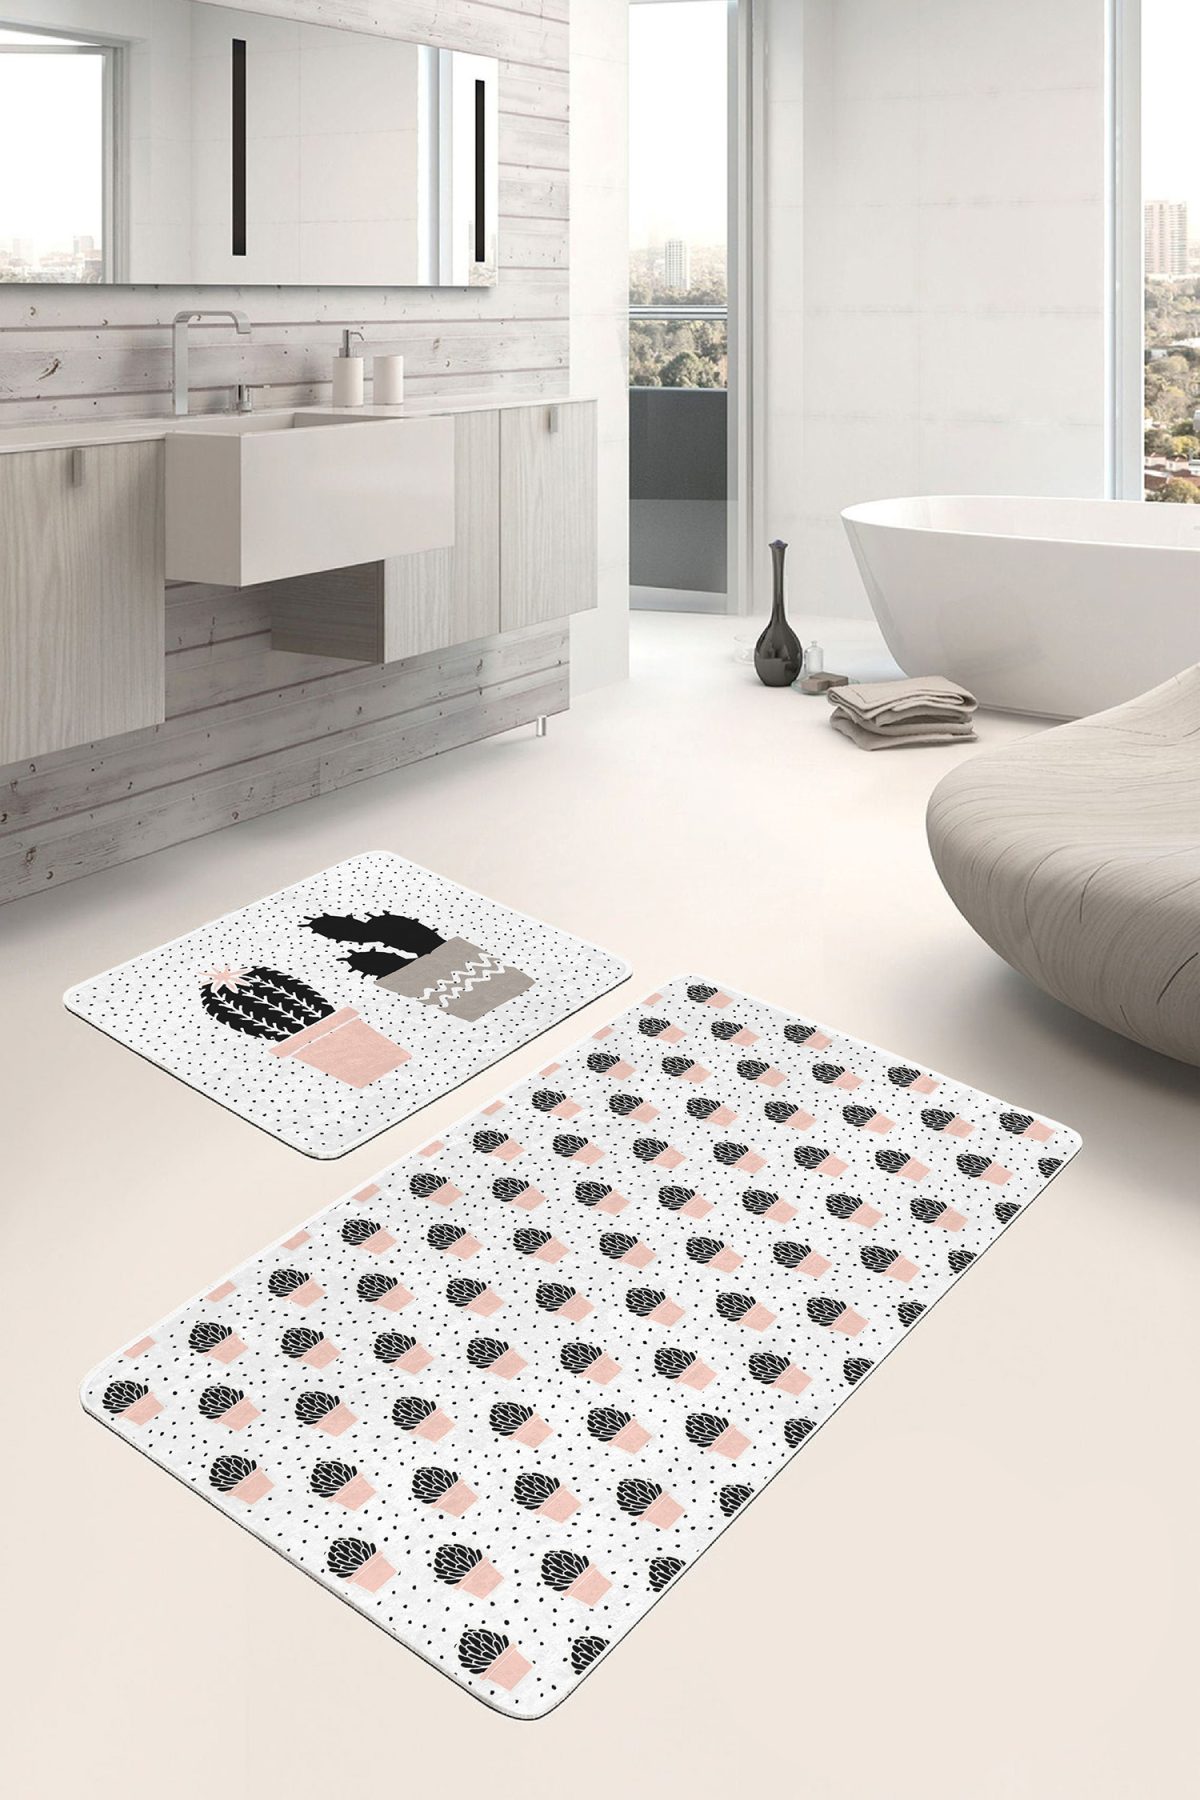 Beyaz Zemin Puantiye Motifli Kaktüs Tasarımlı 2'li Kaymaz Tabanlı Banyo & Mutfak Paspas Takımı Realhomes